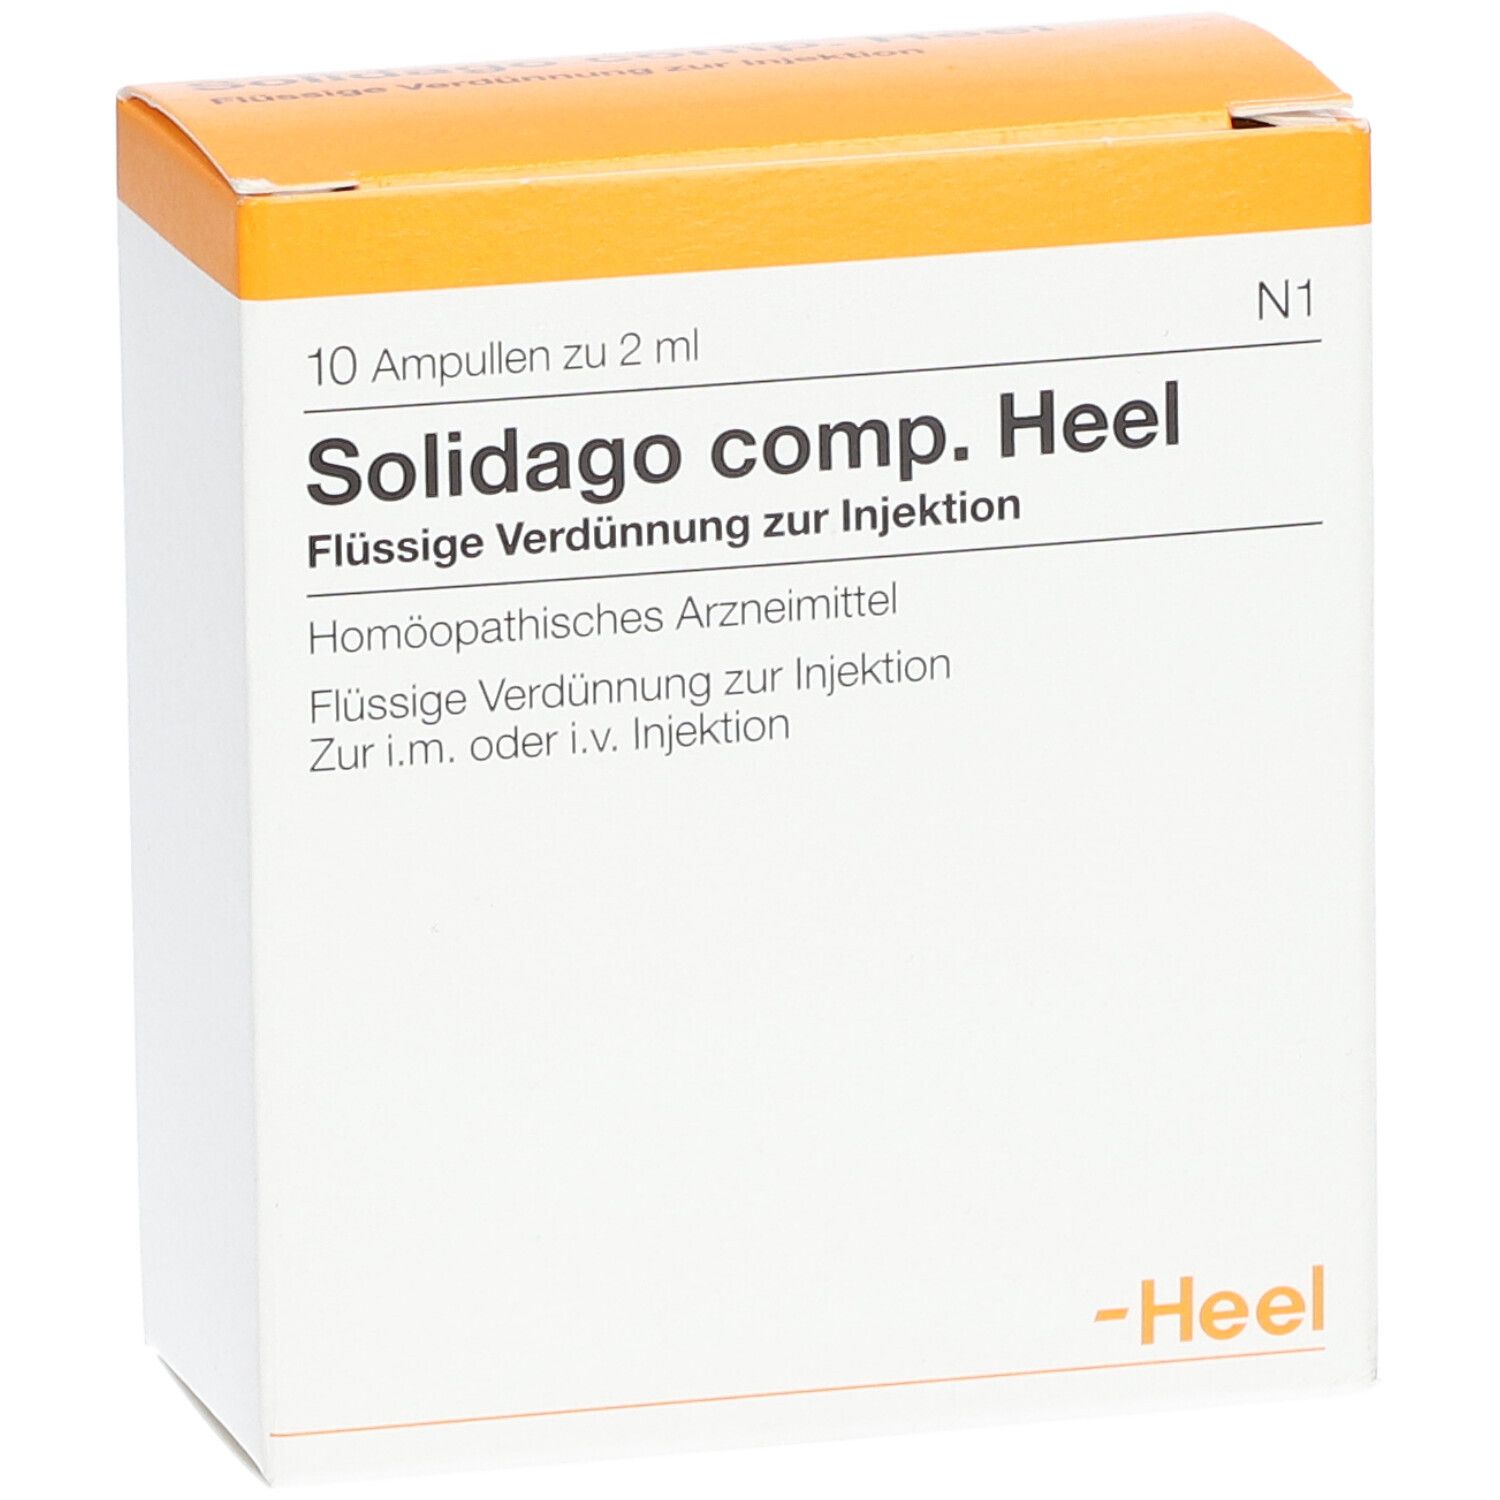 Solidago compositum Heel Ampullen